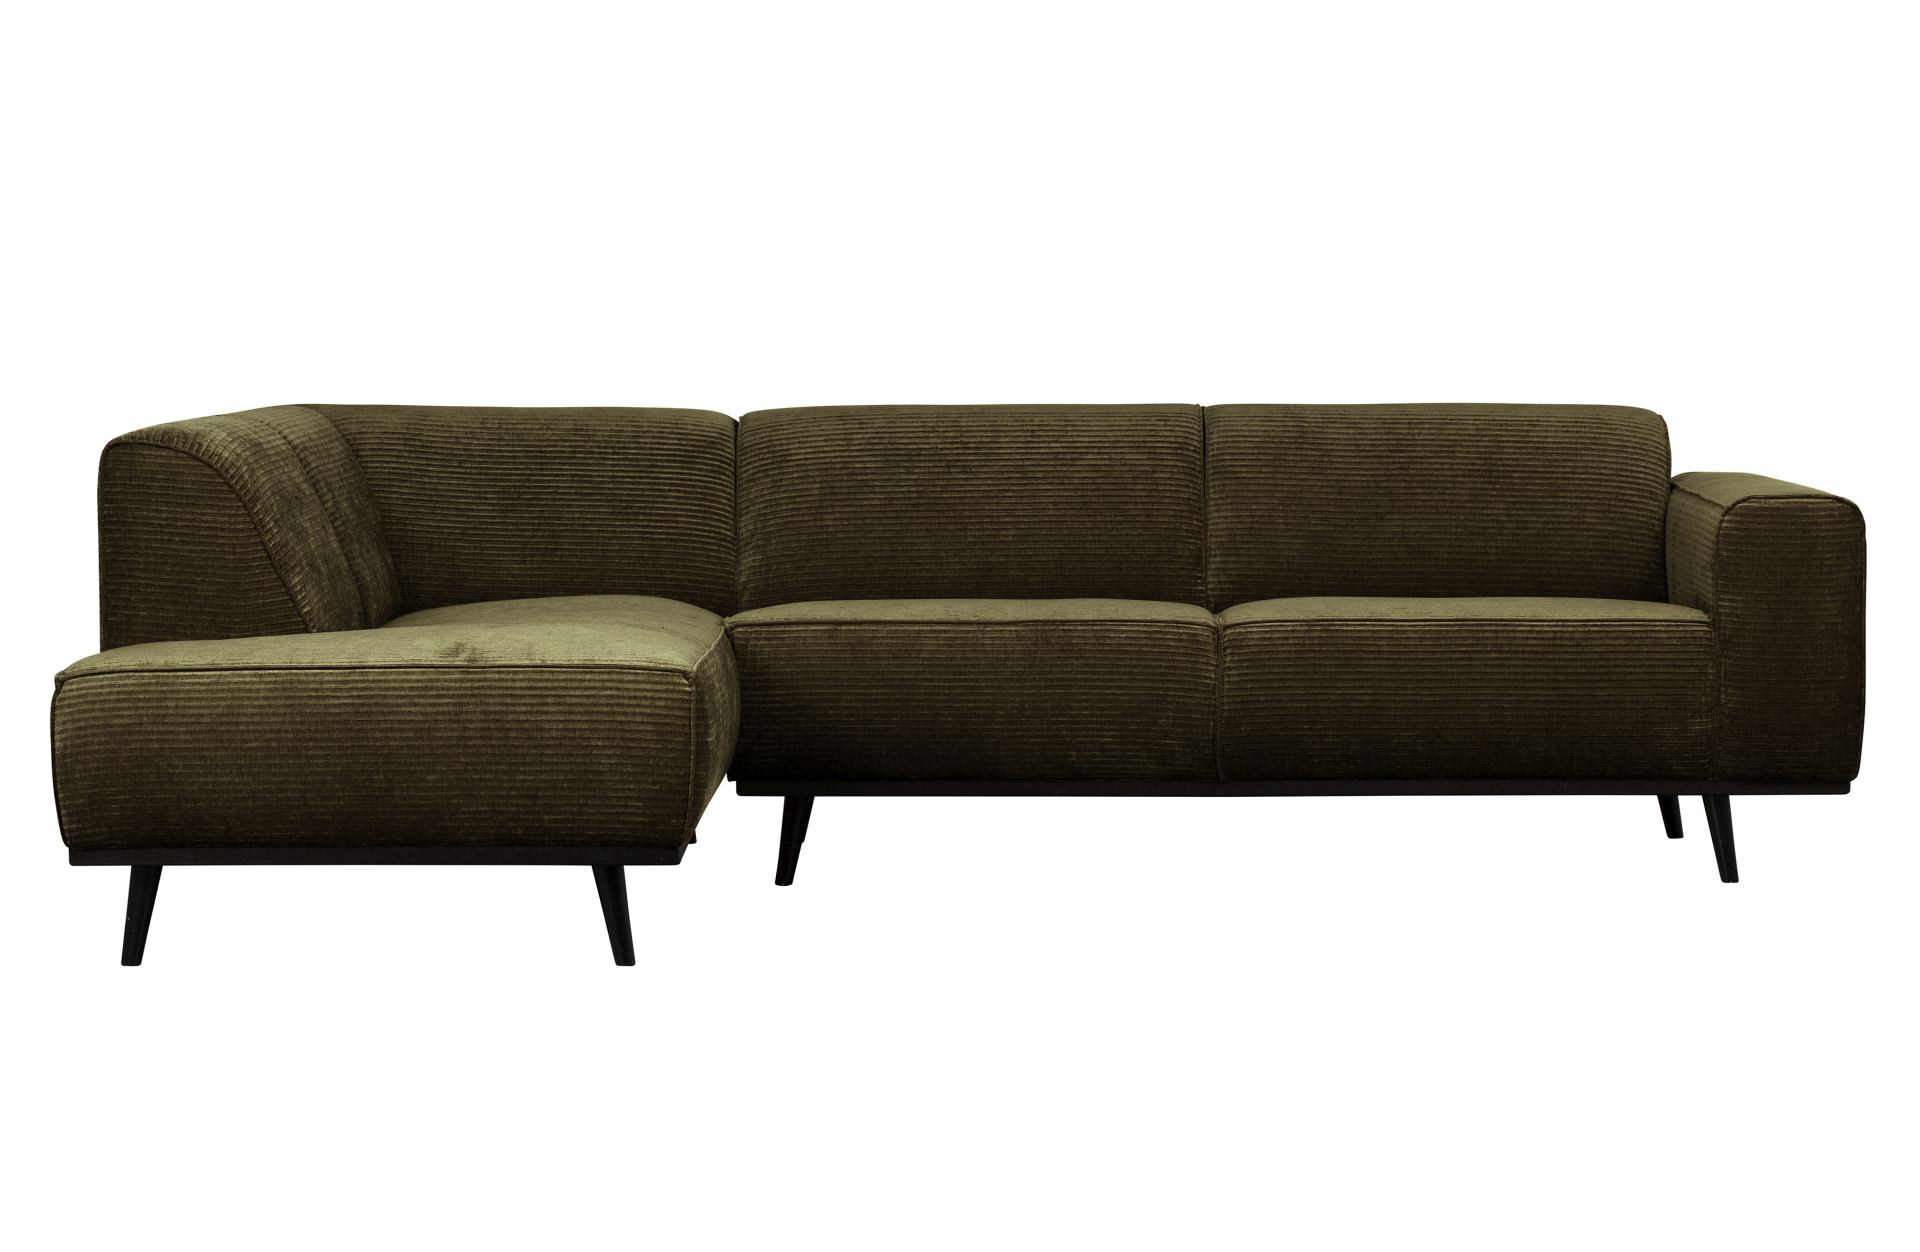 Das Ecksofa Statement überzeugt mit seinem modernen Design. Gefertigt wurde es aus gewebten Jacquard, welches einen Olive Farbton besitzen. Das Gestell ist aus Birkenholz und hat eine schwarze Farbe. Das Sofa hat eine Breite von 274 cm.